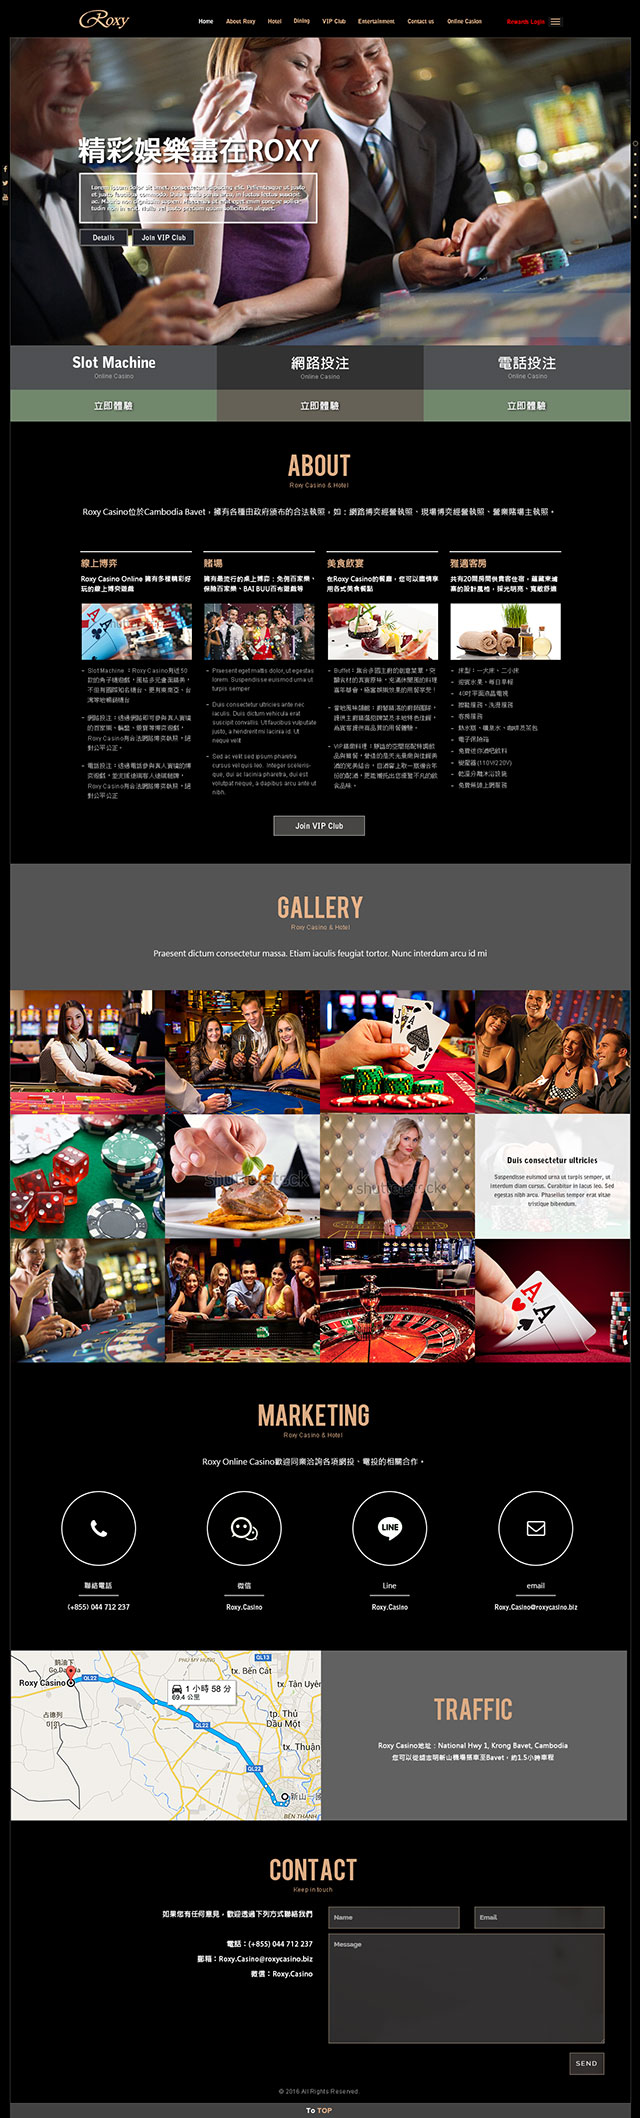 Roxy Casino Hotel, 賭場酒店網頁設計,博弈酒店網頁設計,網頁設計,RWD,homepage design